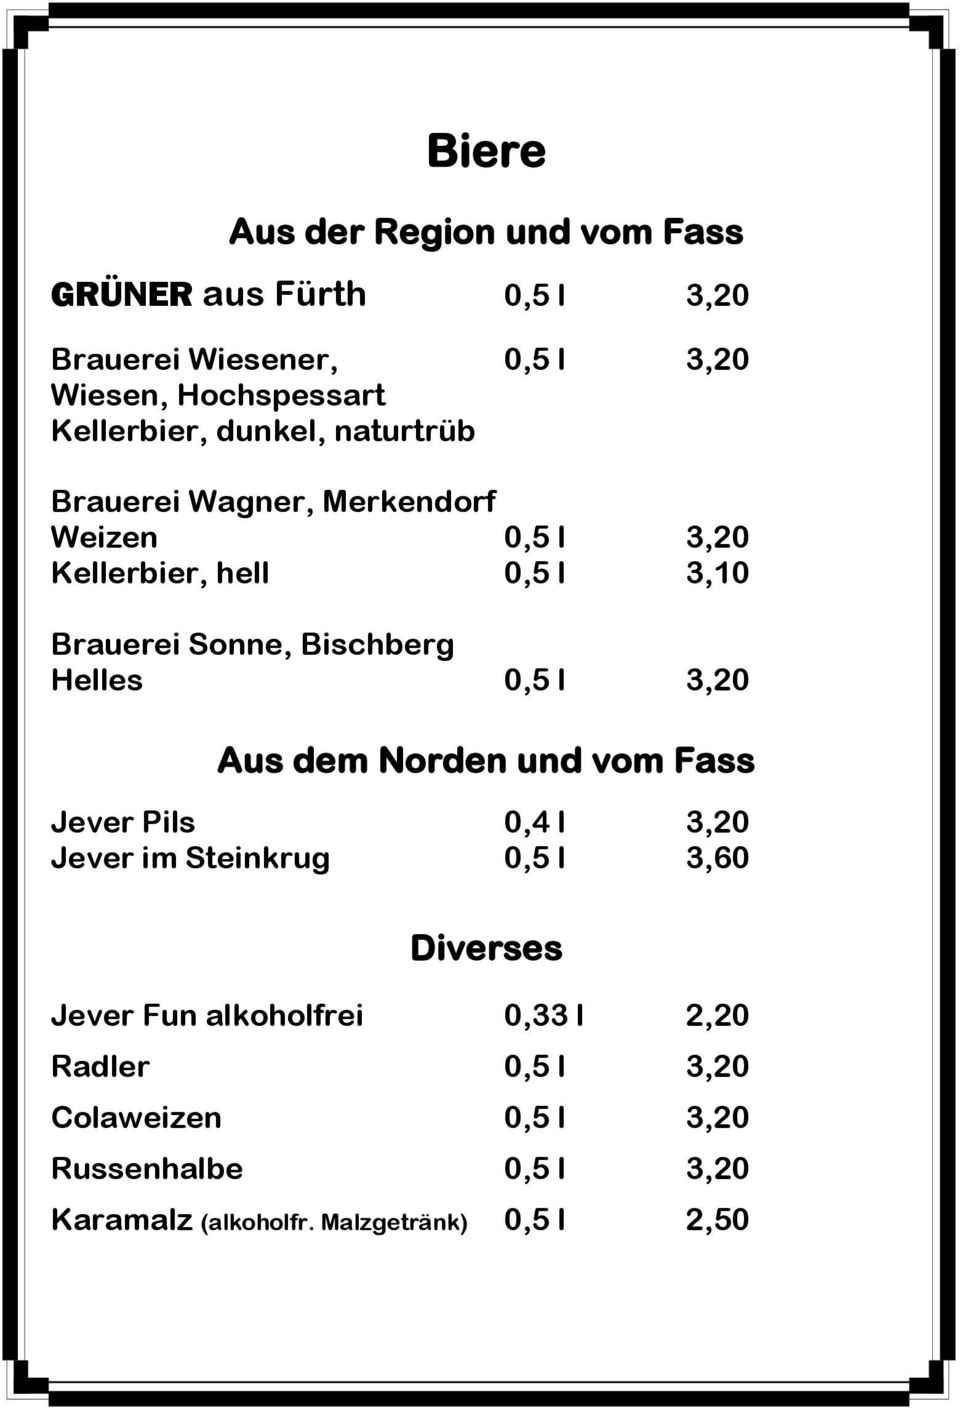 Bischberg Helles 0,5 l 3,20 Aus dem Norden und vom Fass Jever Pils 0,4 l 3,20 Jever im Steinkrug 0,5 l 3,60 Diverses Jever